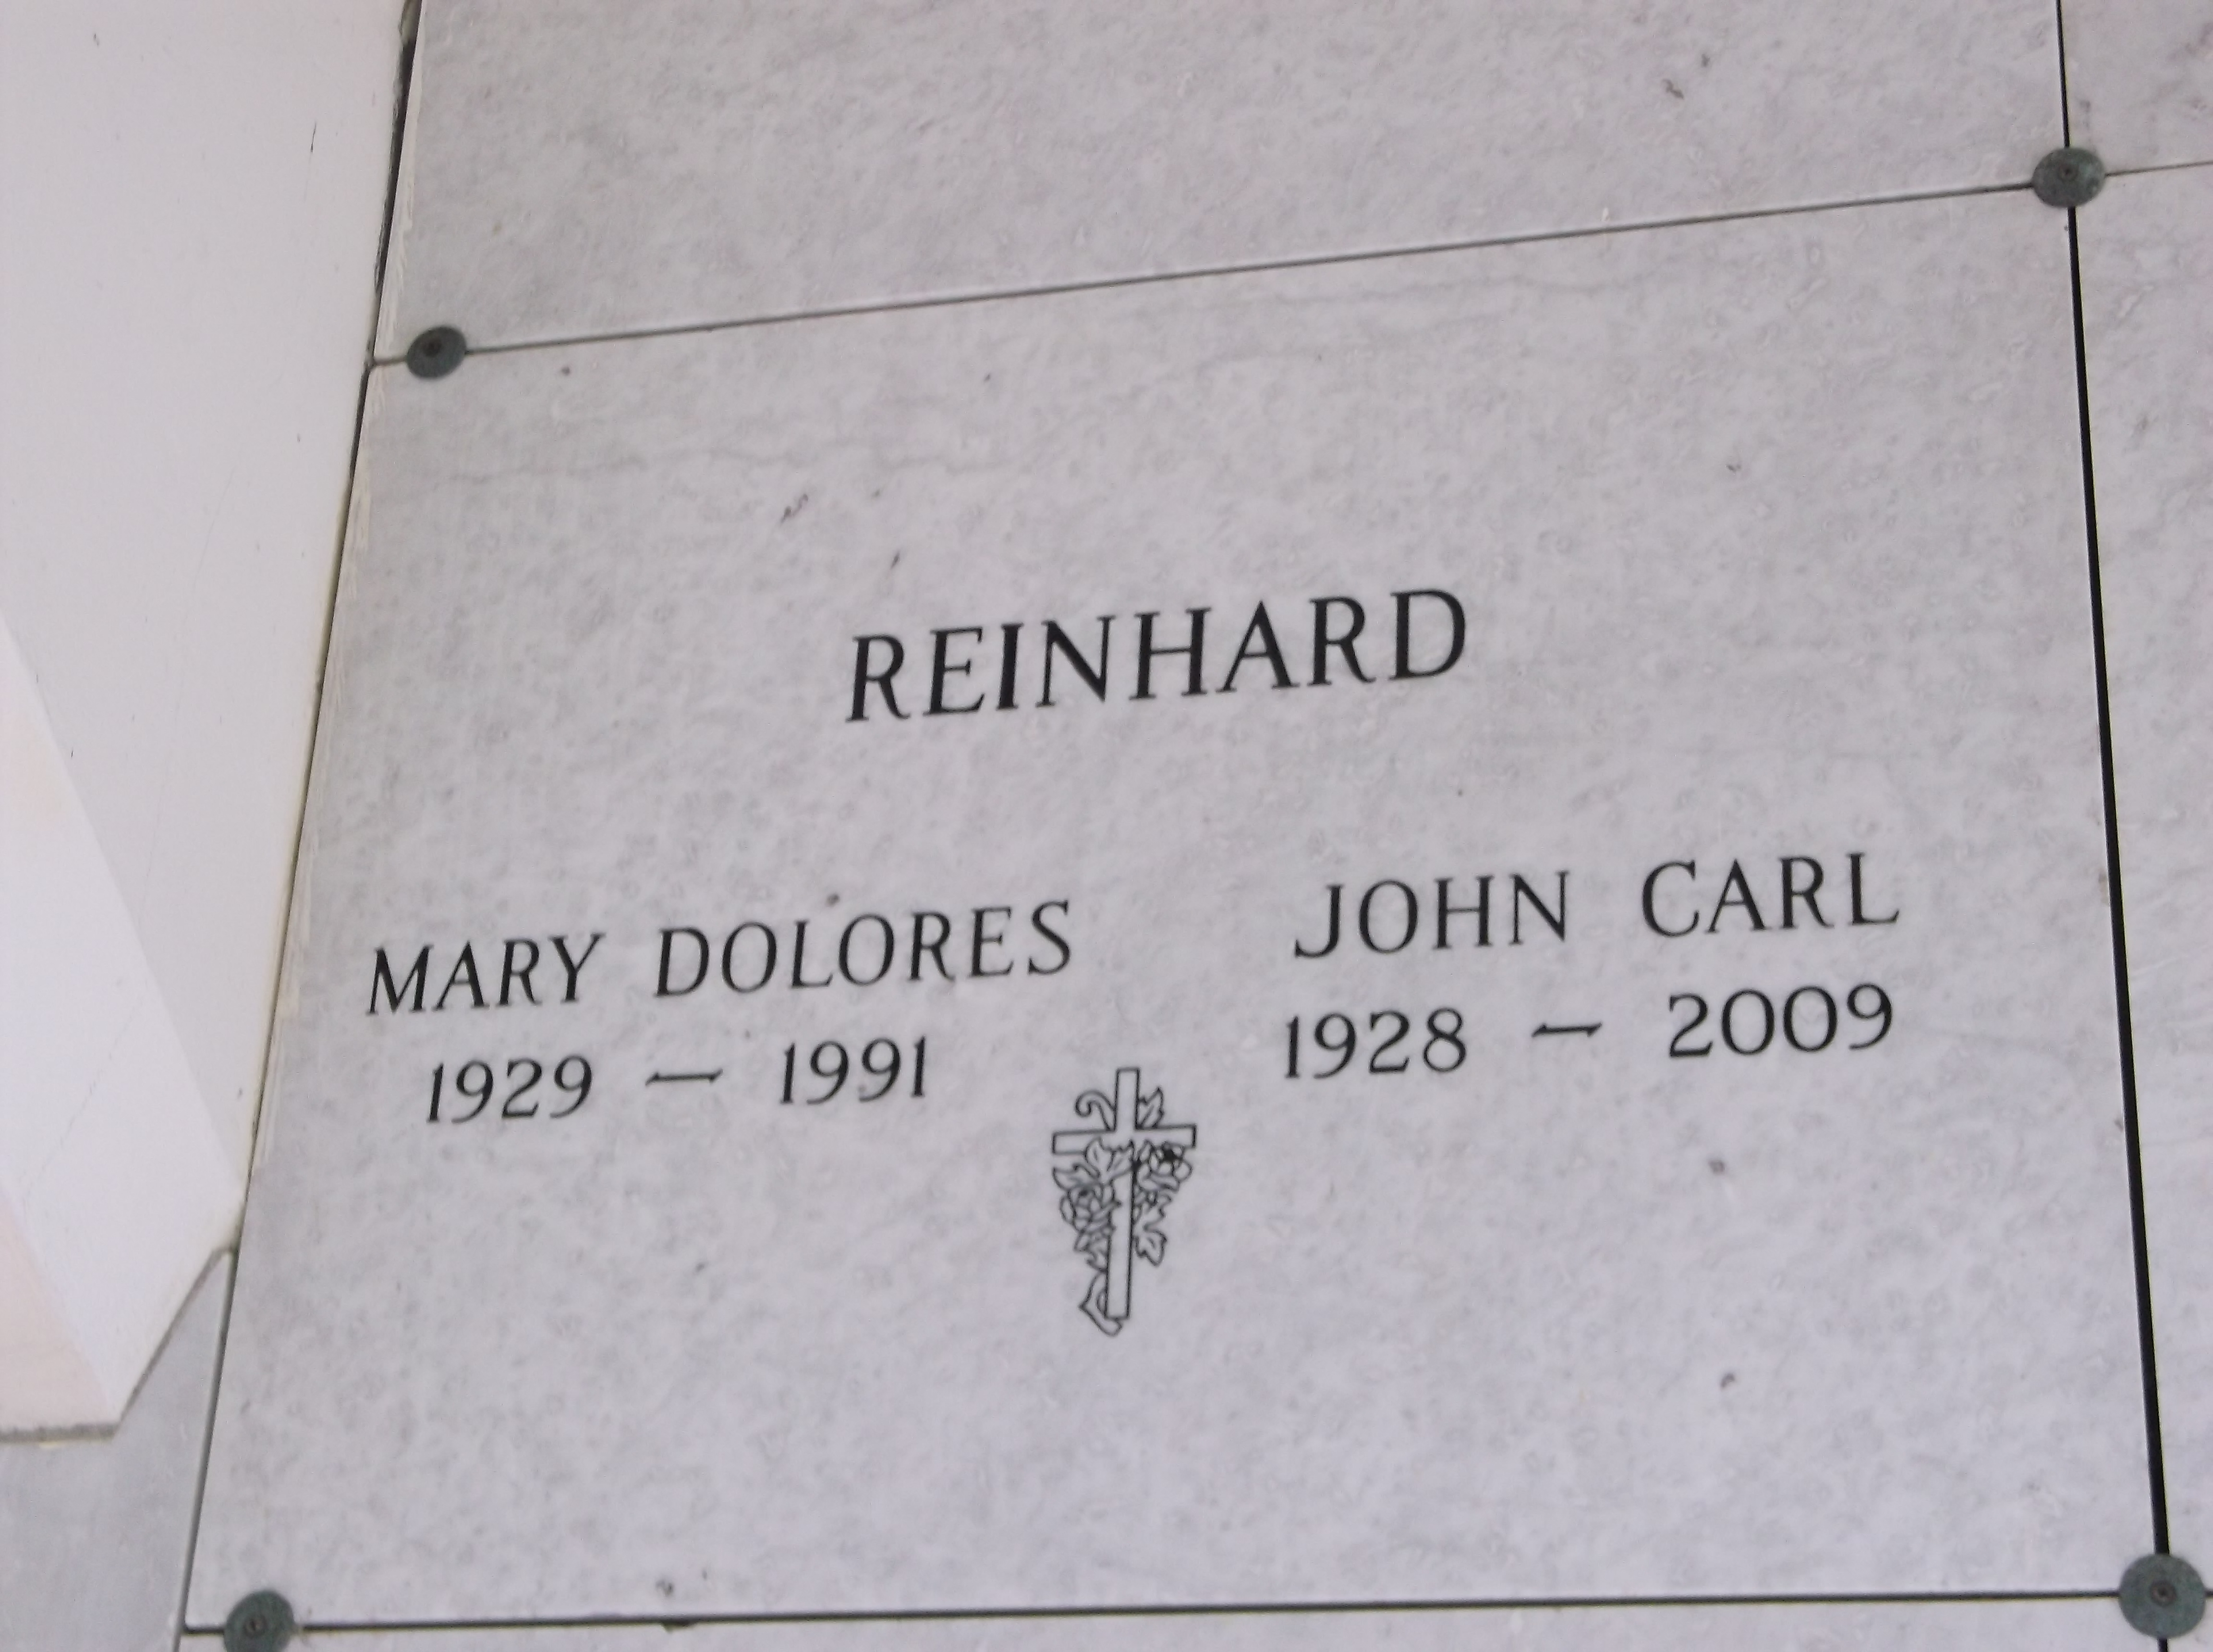 Mary Dolores Reinhard